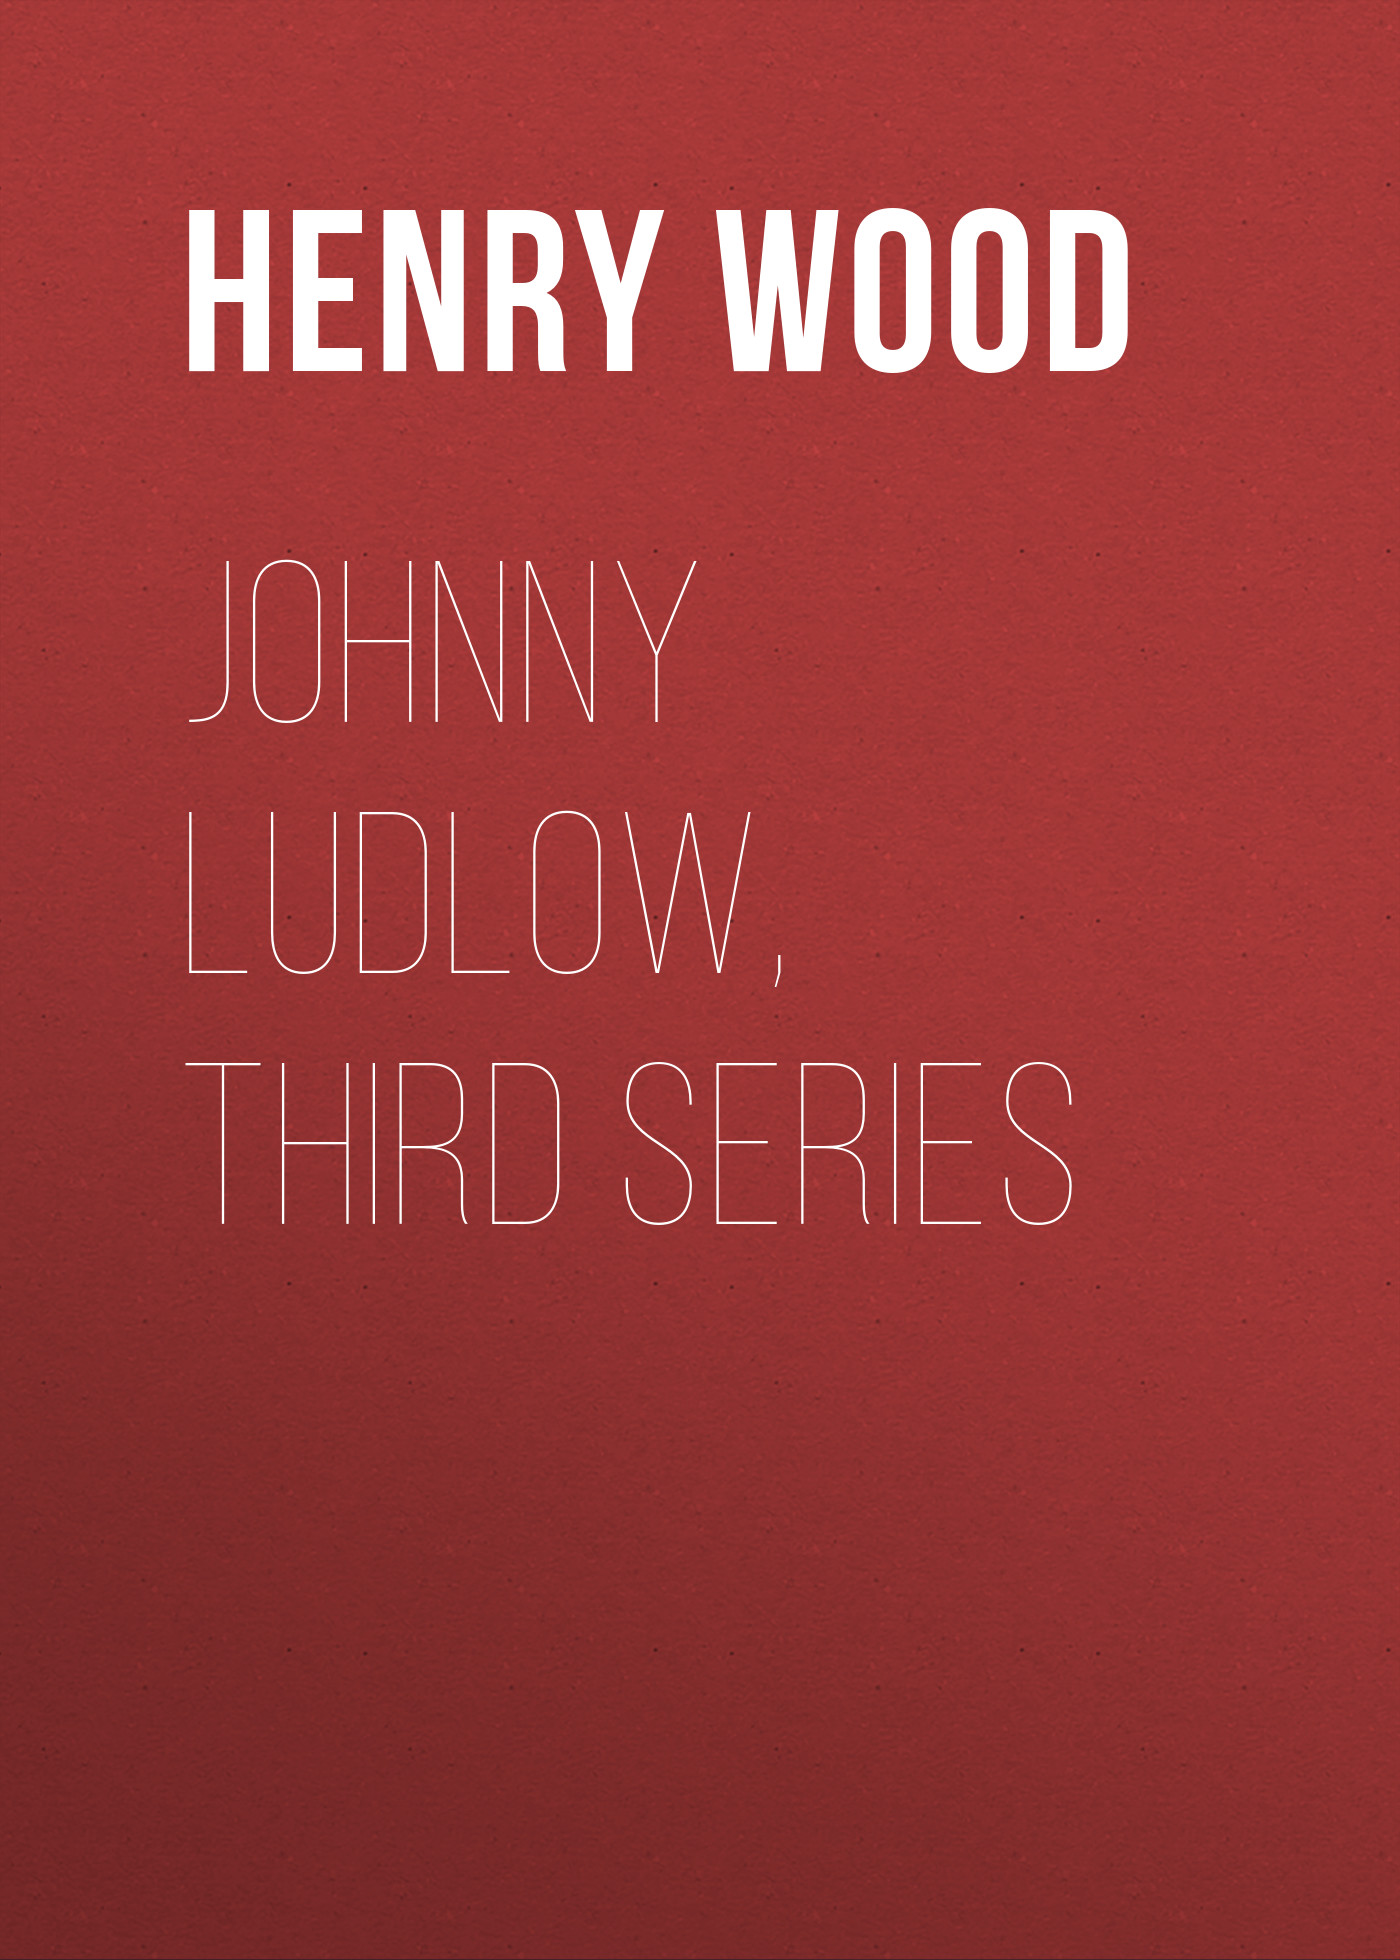 Книга Johnny Ludlow, Third Series из серии , созданная Henry Wood, может относится к жанру Зарубежная классика, Литература 19 века, Зарубежная старинная литература. Стоимость электронной книги Johnny Ludlow, Third Series с идентификатором 35007553 составляет 0 руб.